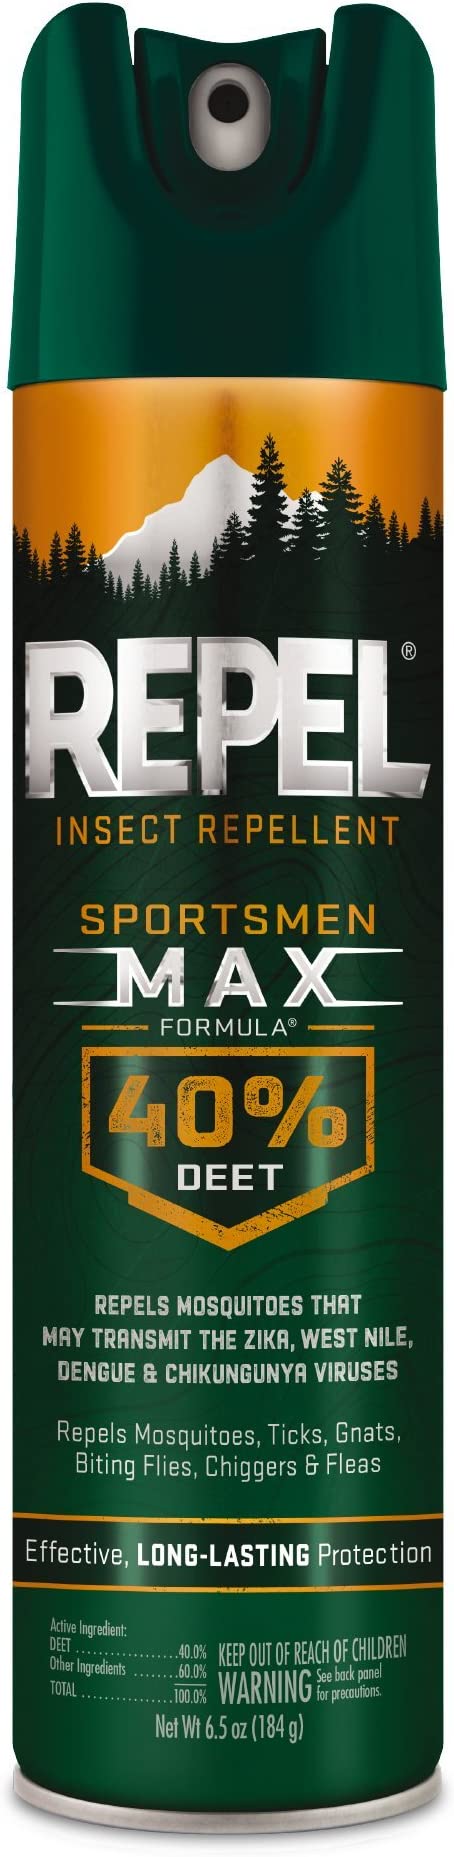 Repel Sportsmen Max 40% Deet : 6.5oz